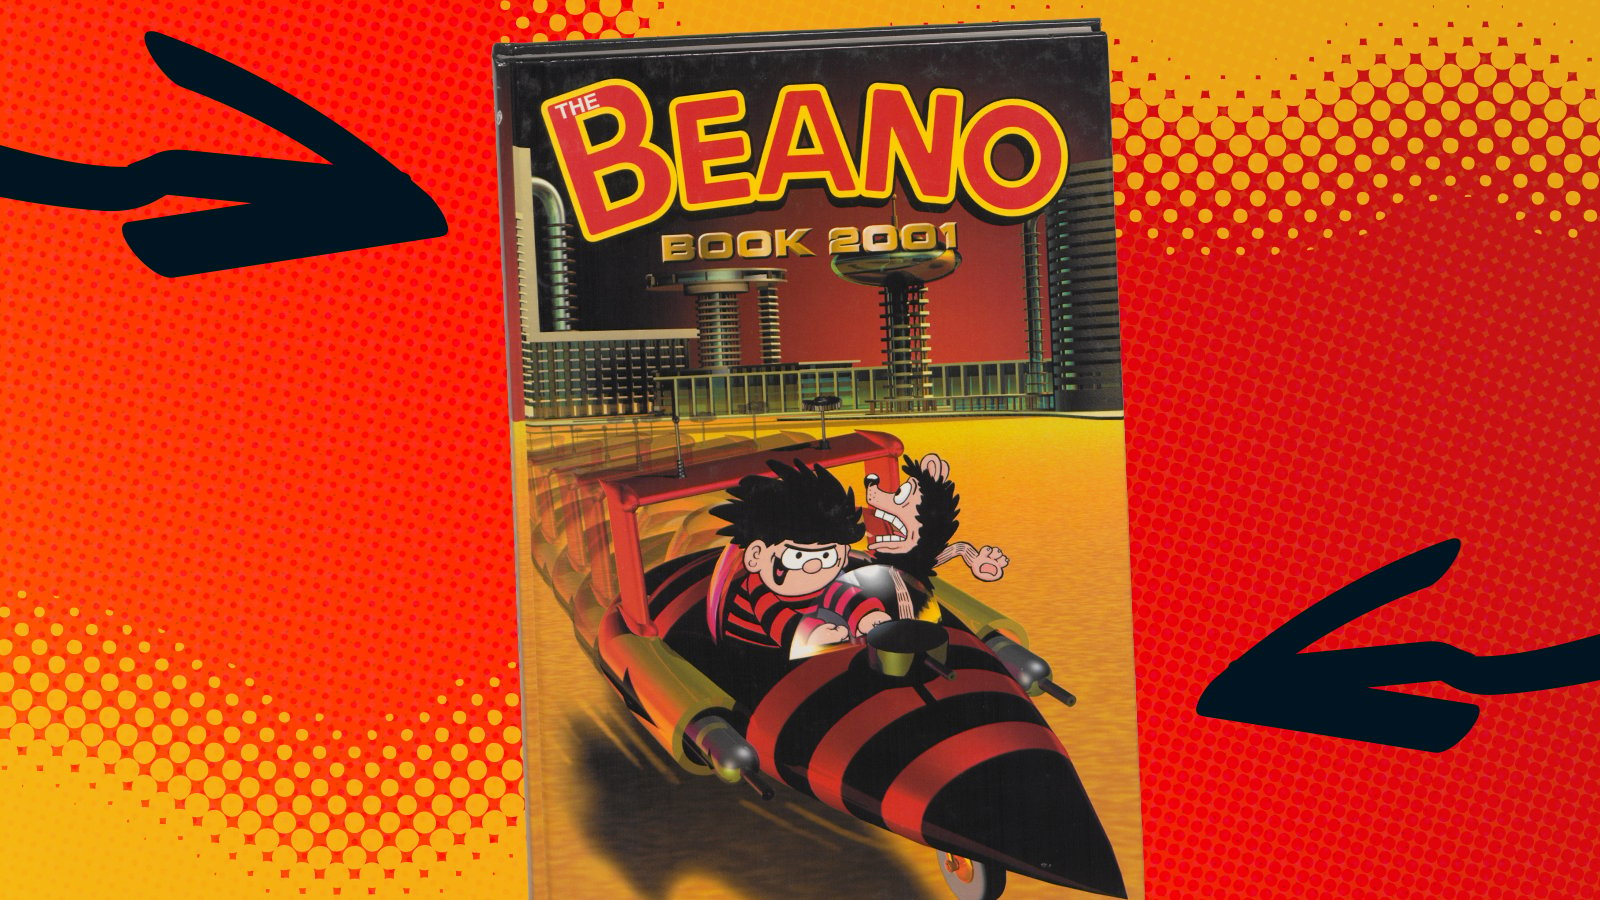 Beano Book 2001 Annual